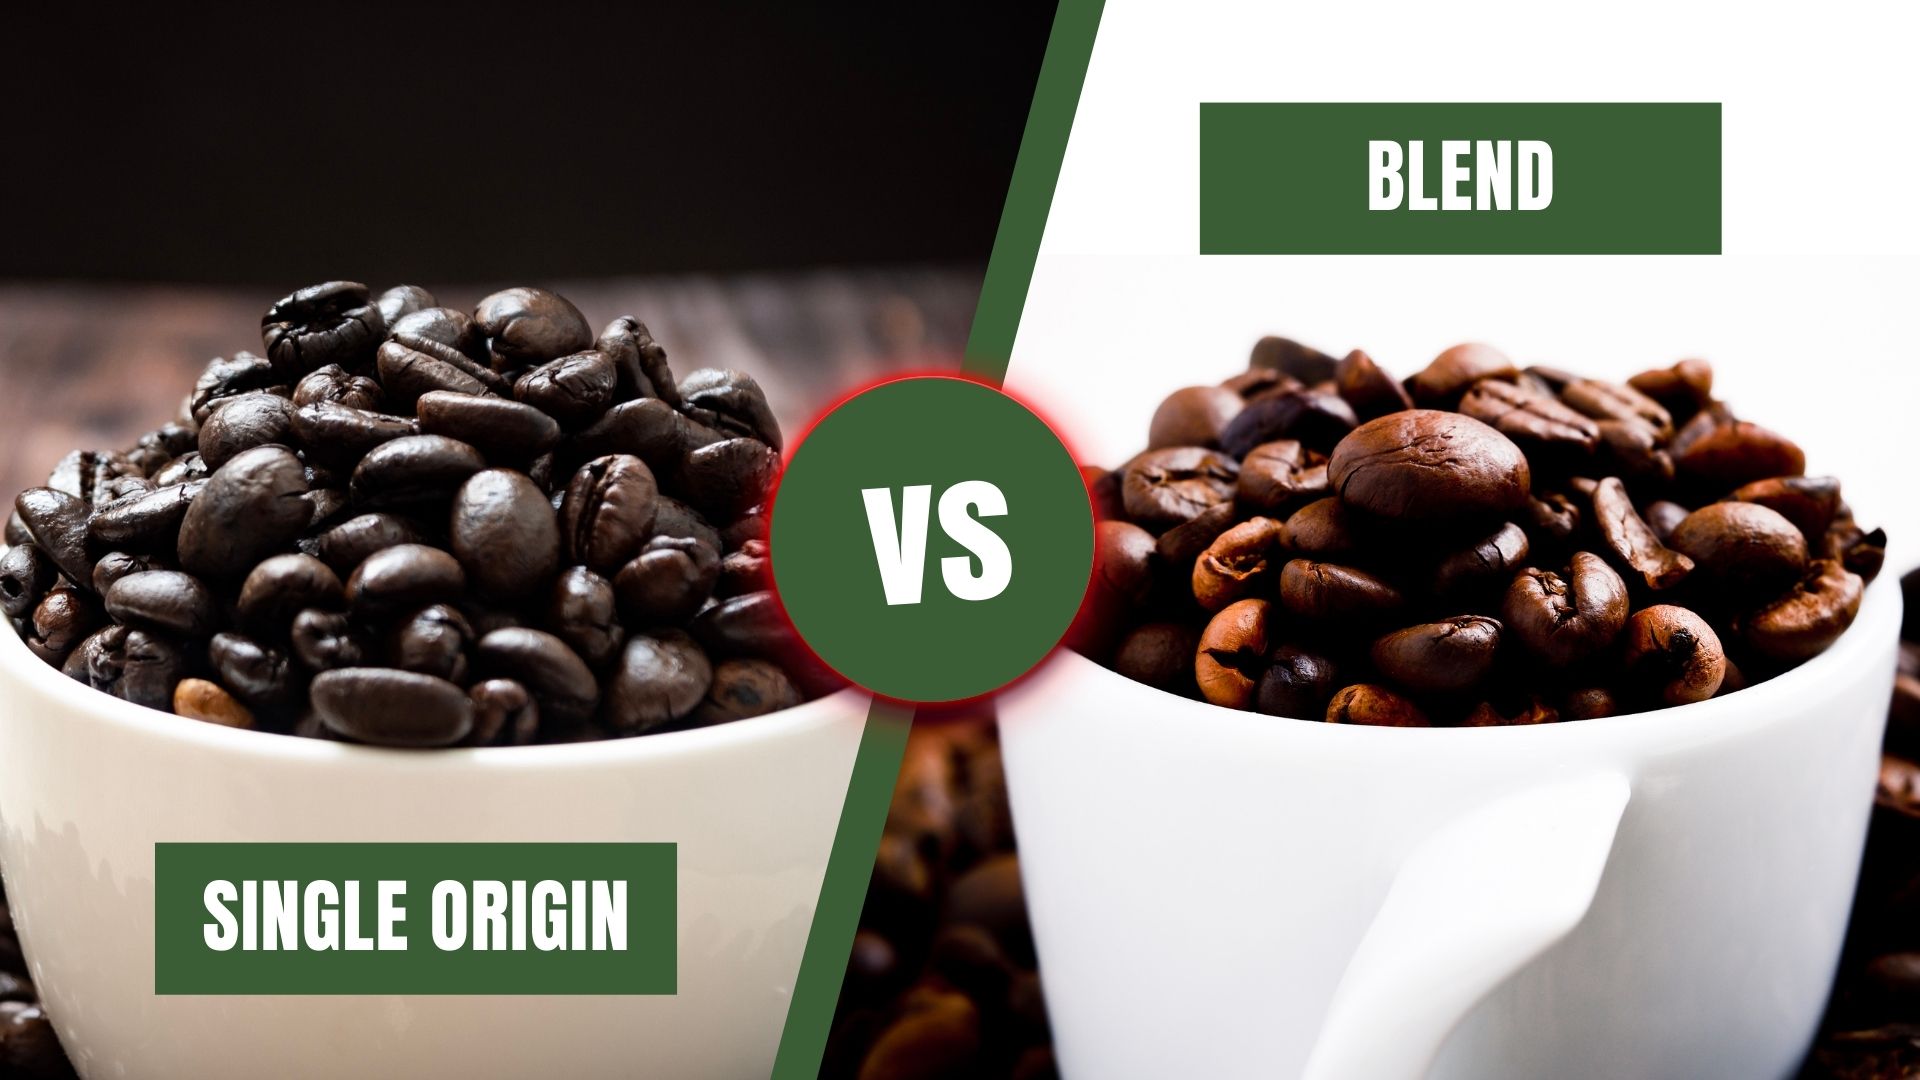 Single origin coffee versus coffee blend